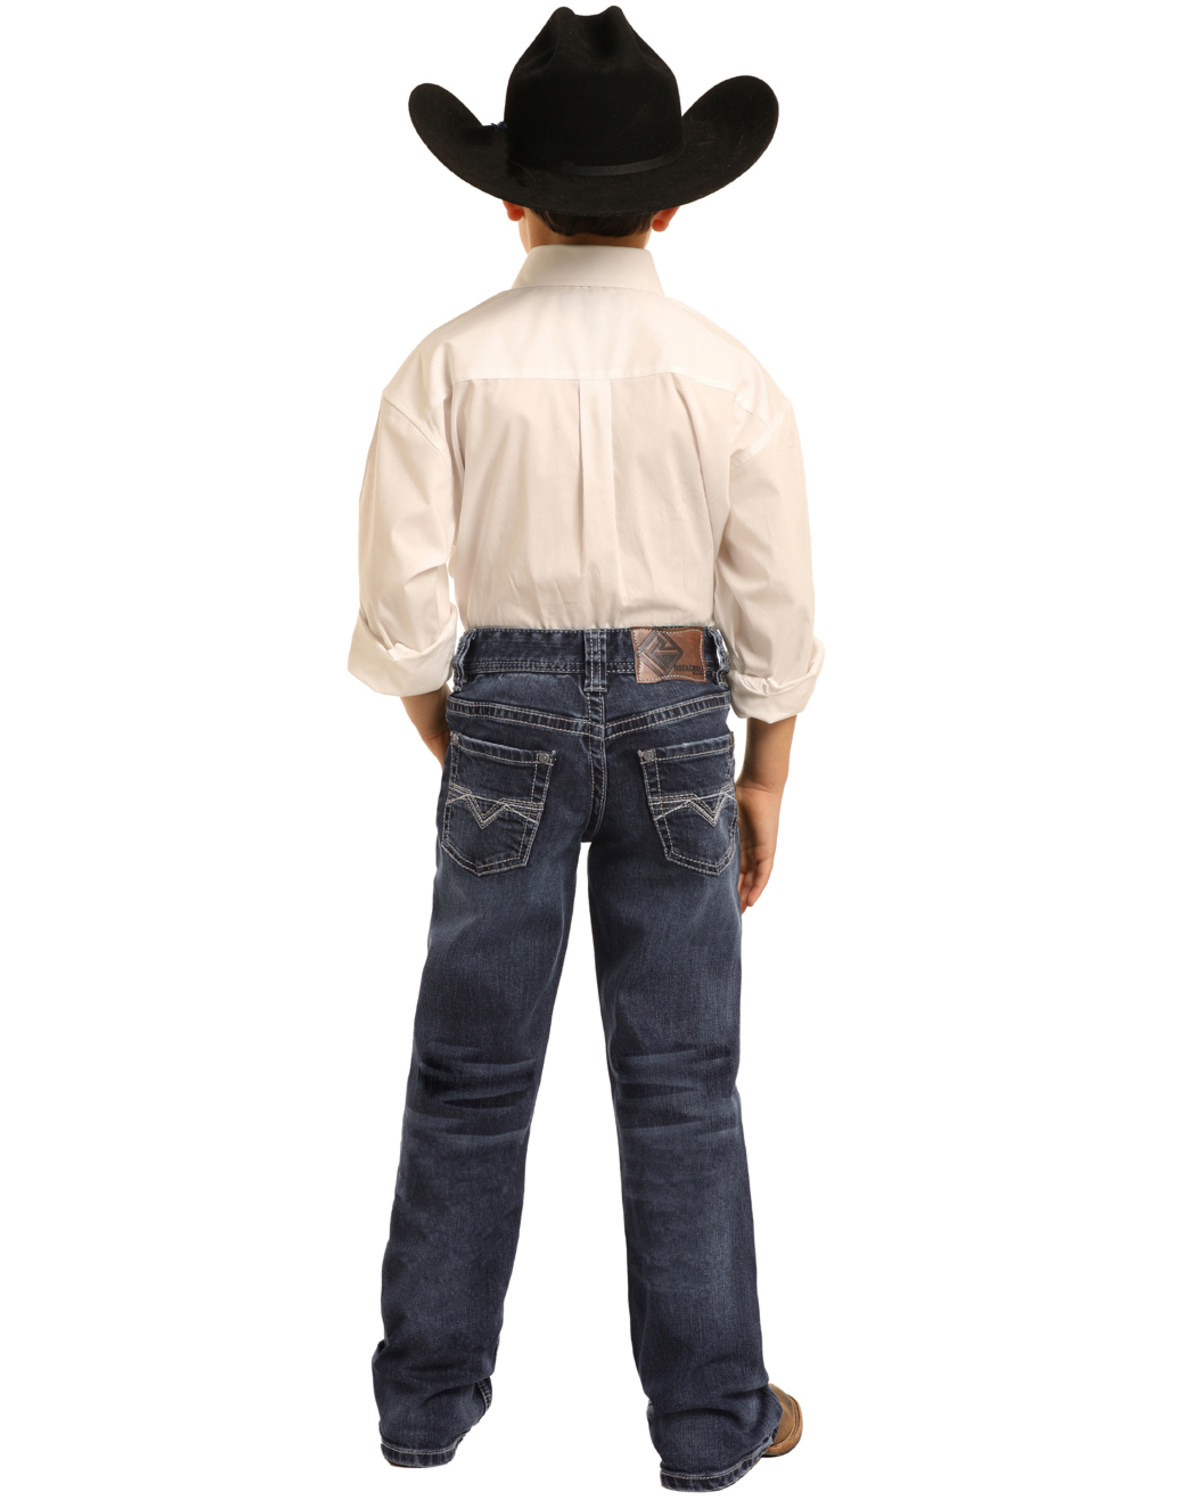 boys cowboy jeans